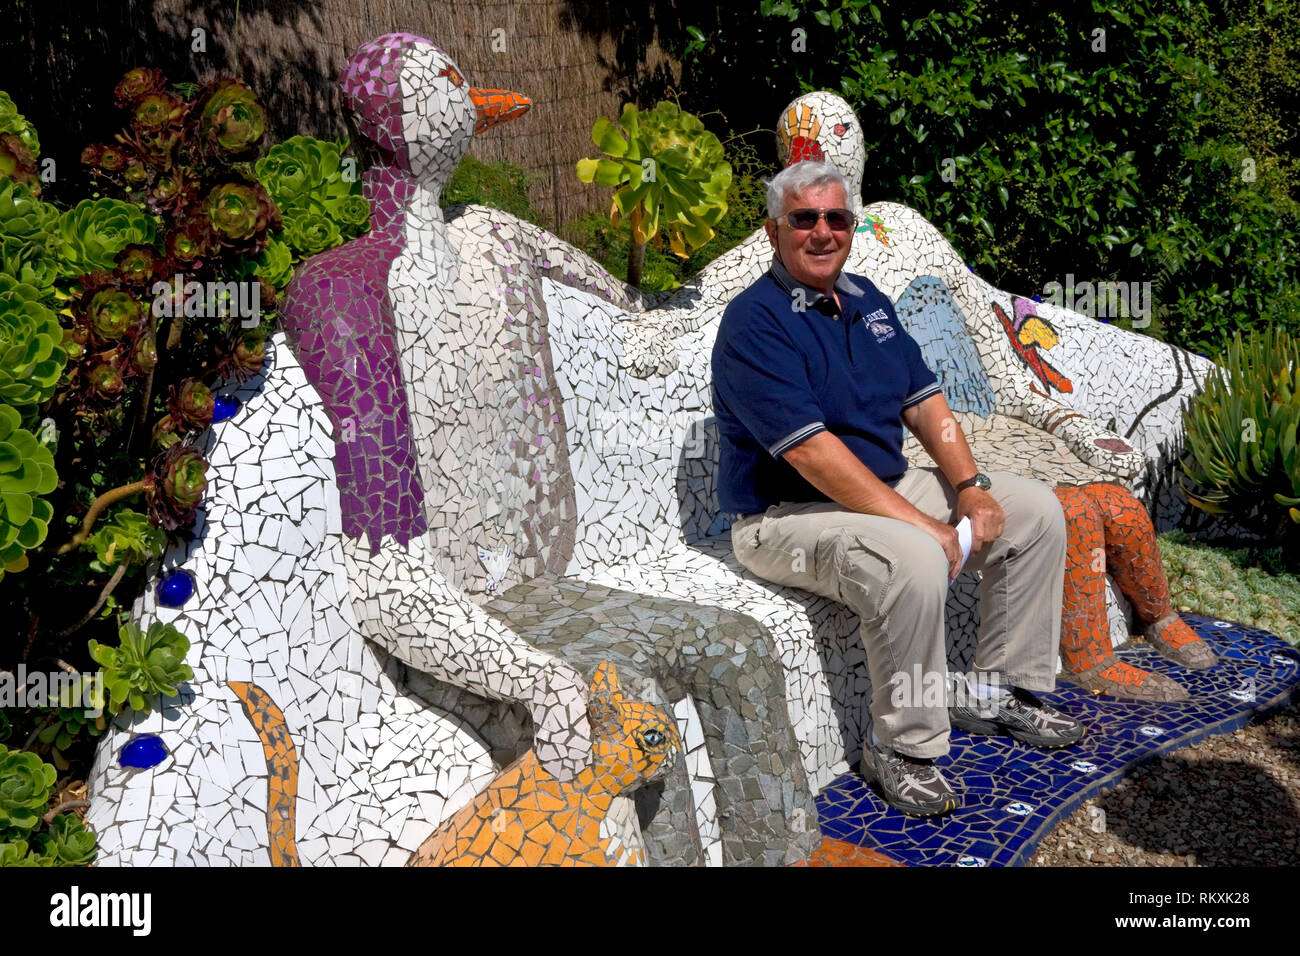 Banc de mosaïque ; figures ; CHAT ; art, l'homme assis ; jardin ; les géants de la scène House, New Caledonia ; Nouvelle-Zélande ; horizontal ; M. Banque D'Images